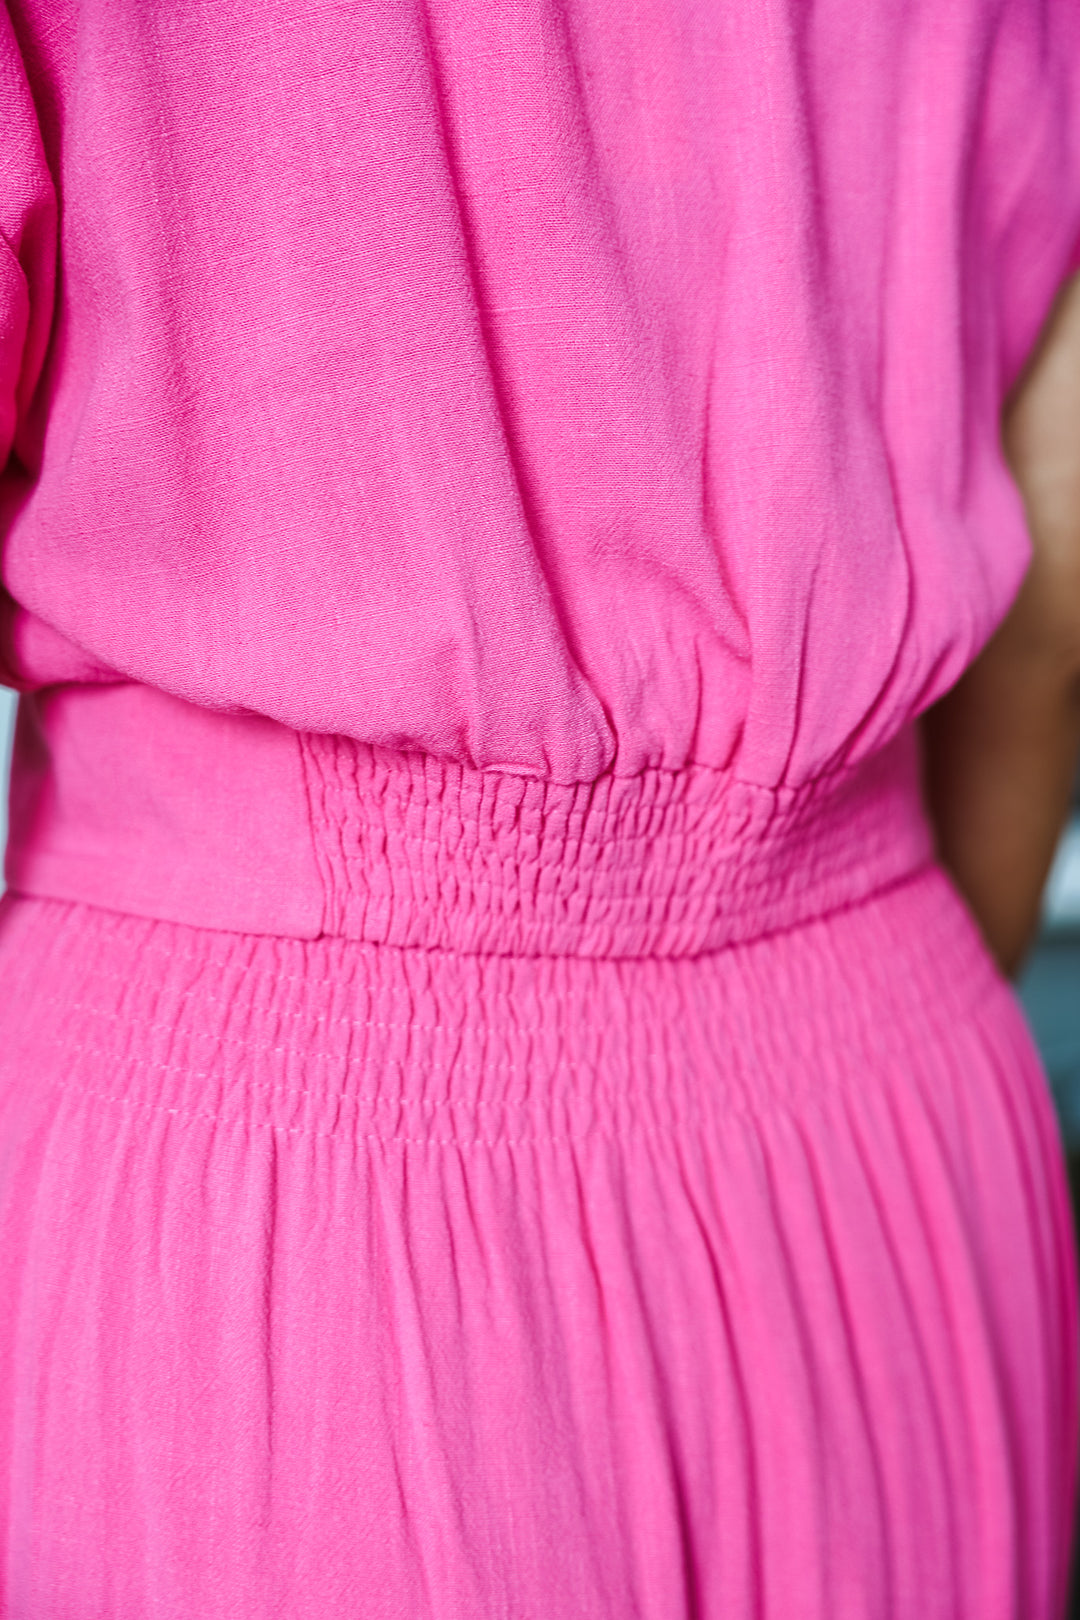 Linen Top/Skirt Set - Pink